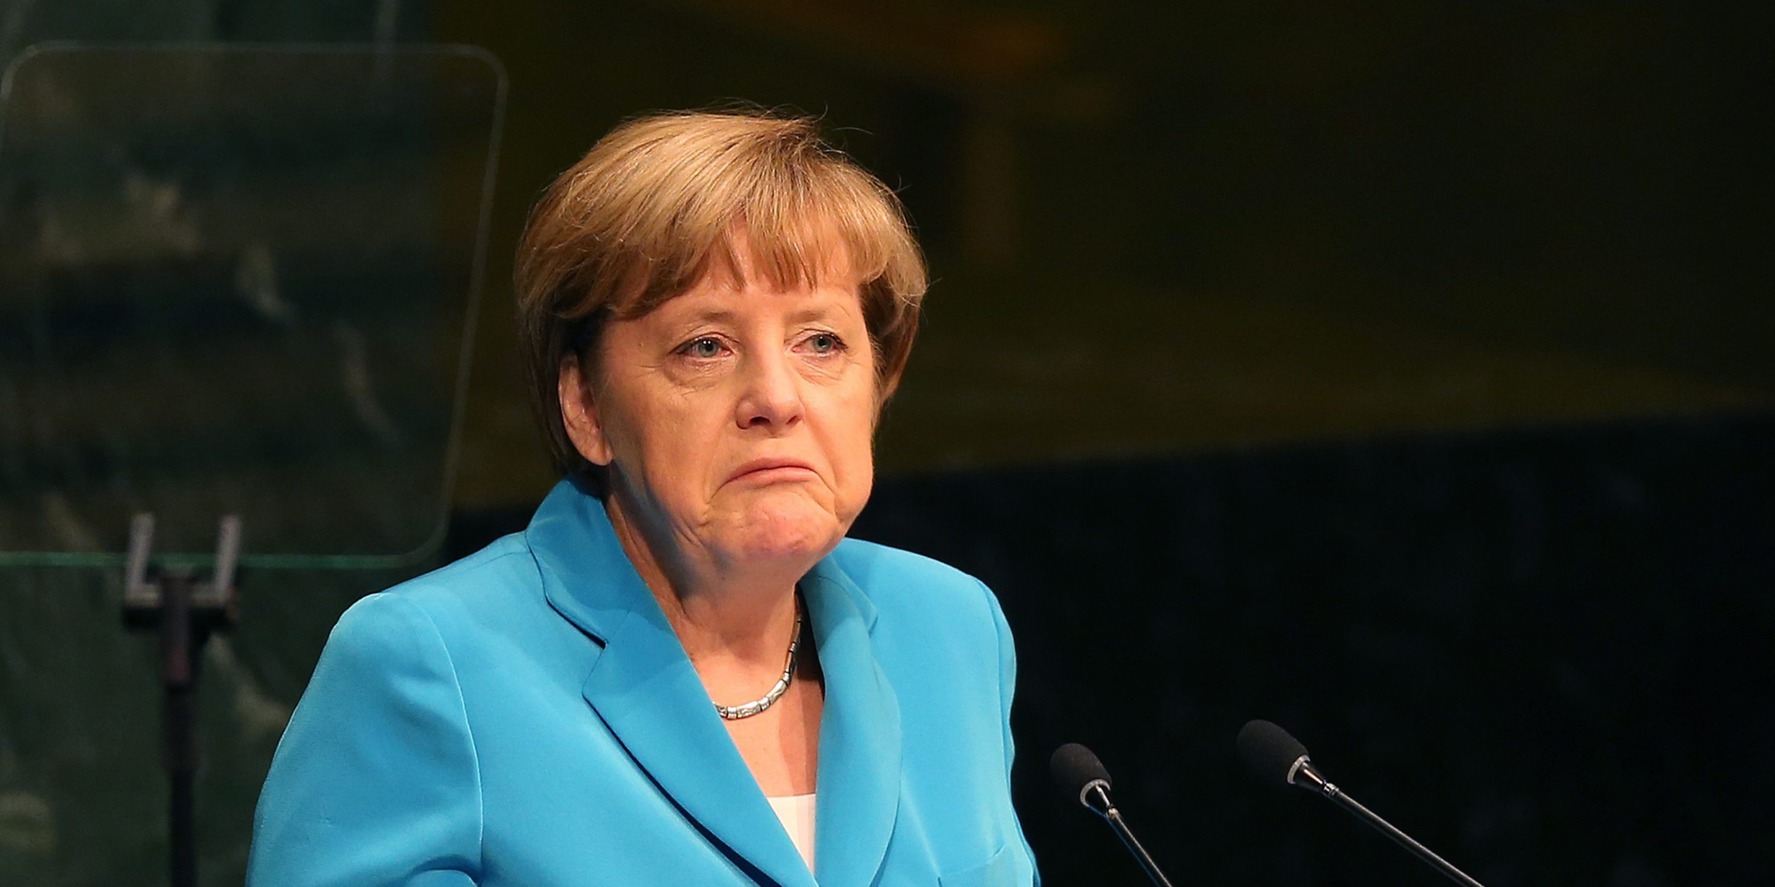 Megzavarták Angela Merkel beszédét egy tudományos intézet avatóünnepségén